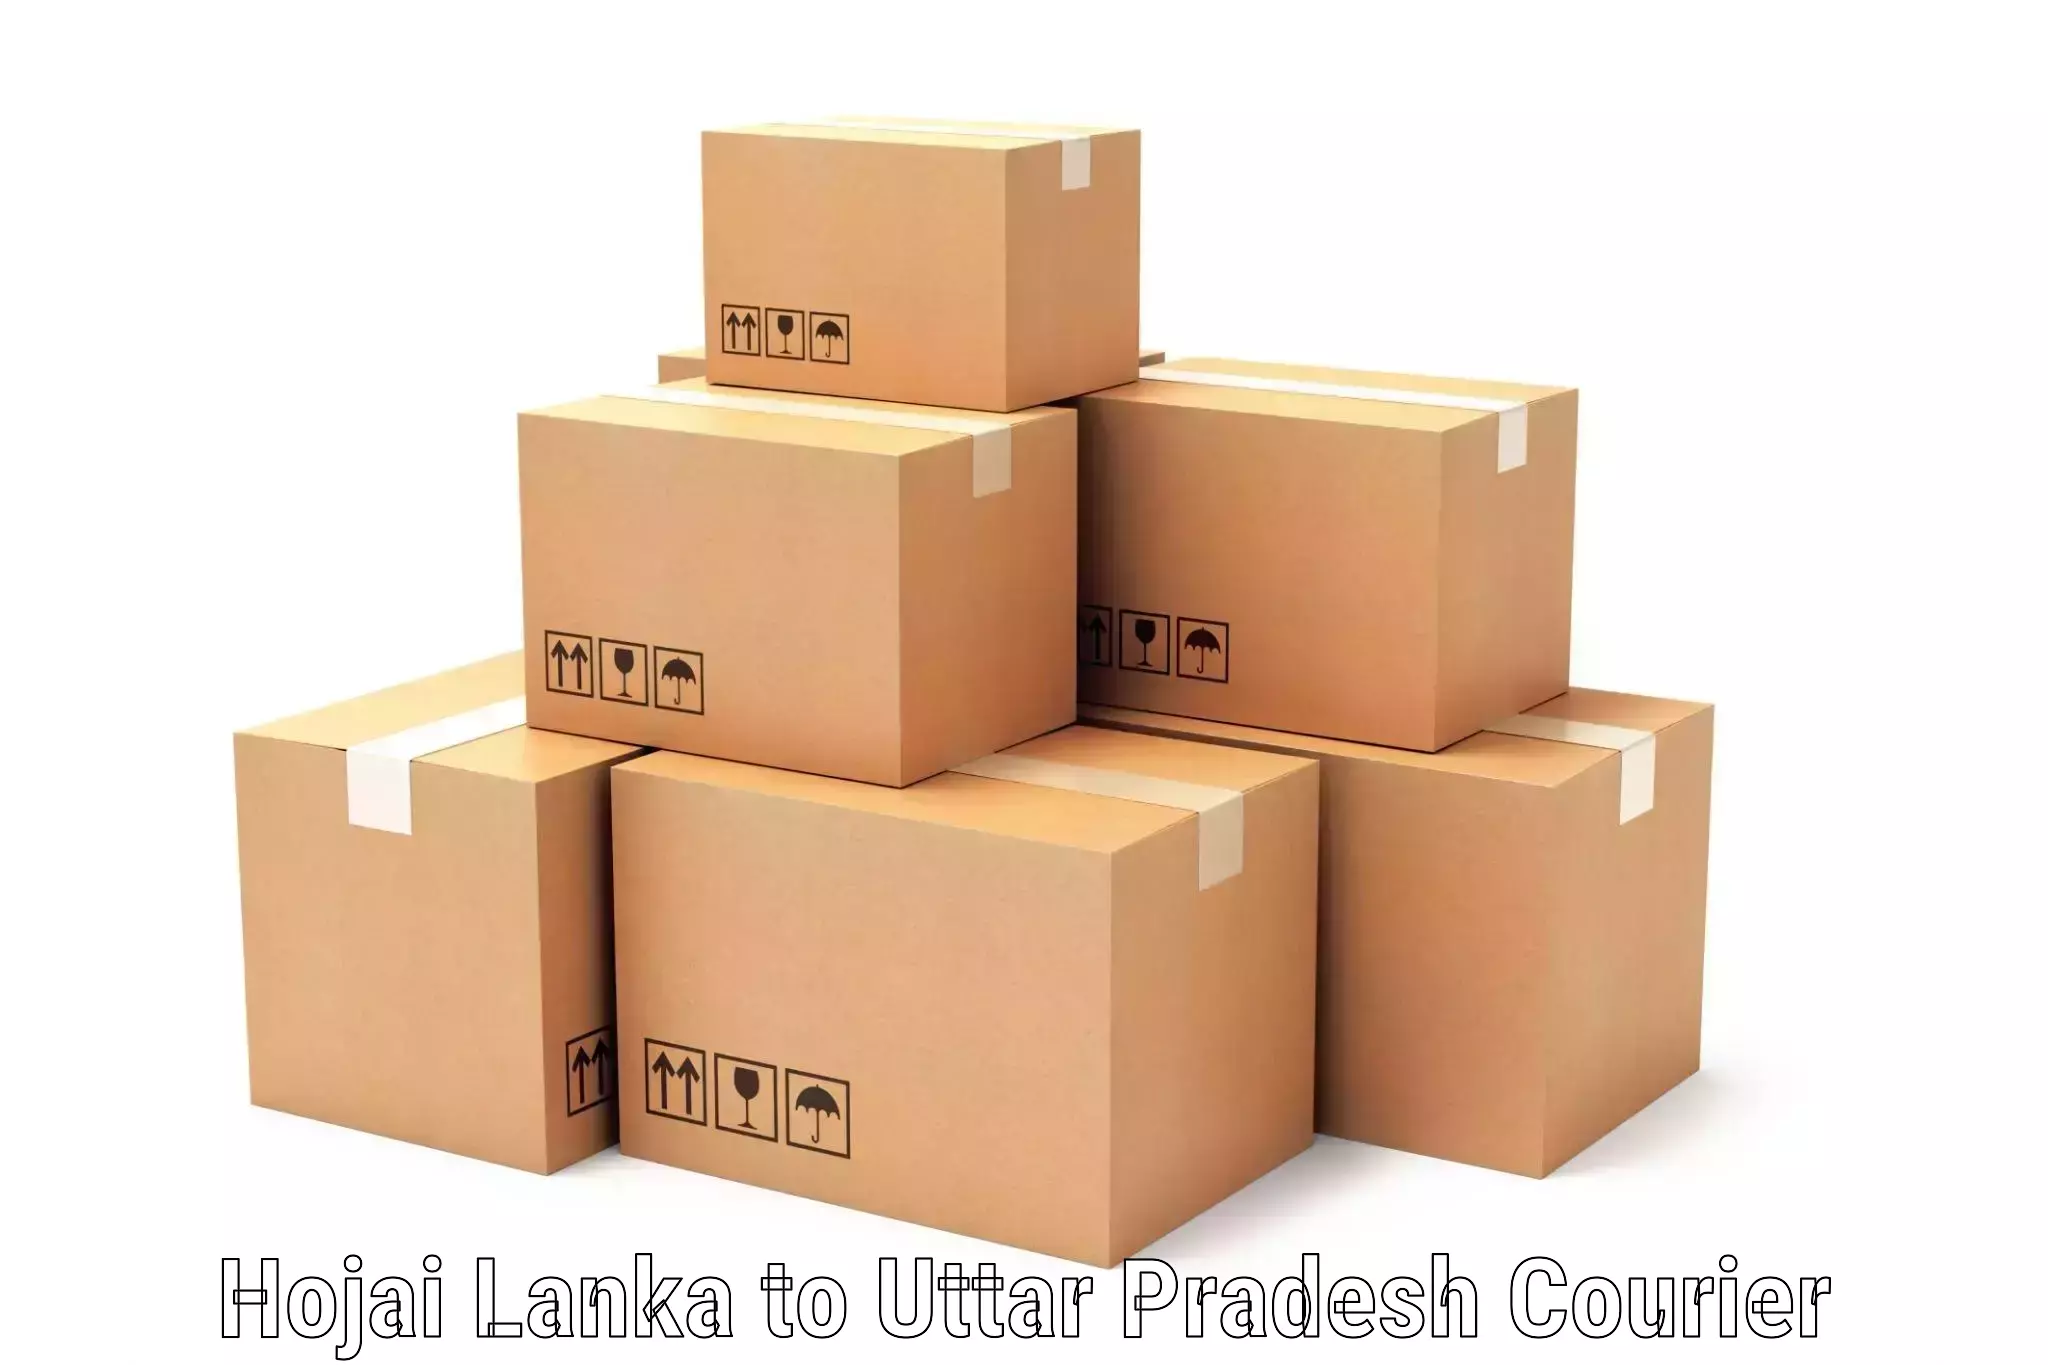 Tailored freight services Hojai Lanka to Itia Thok